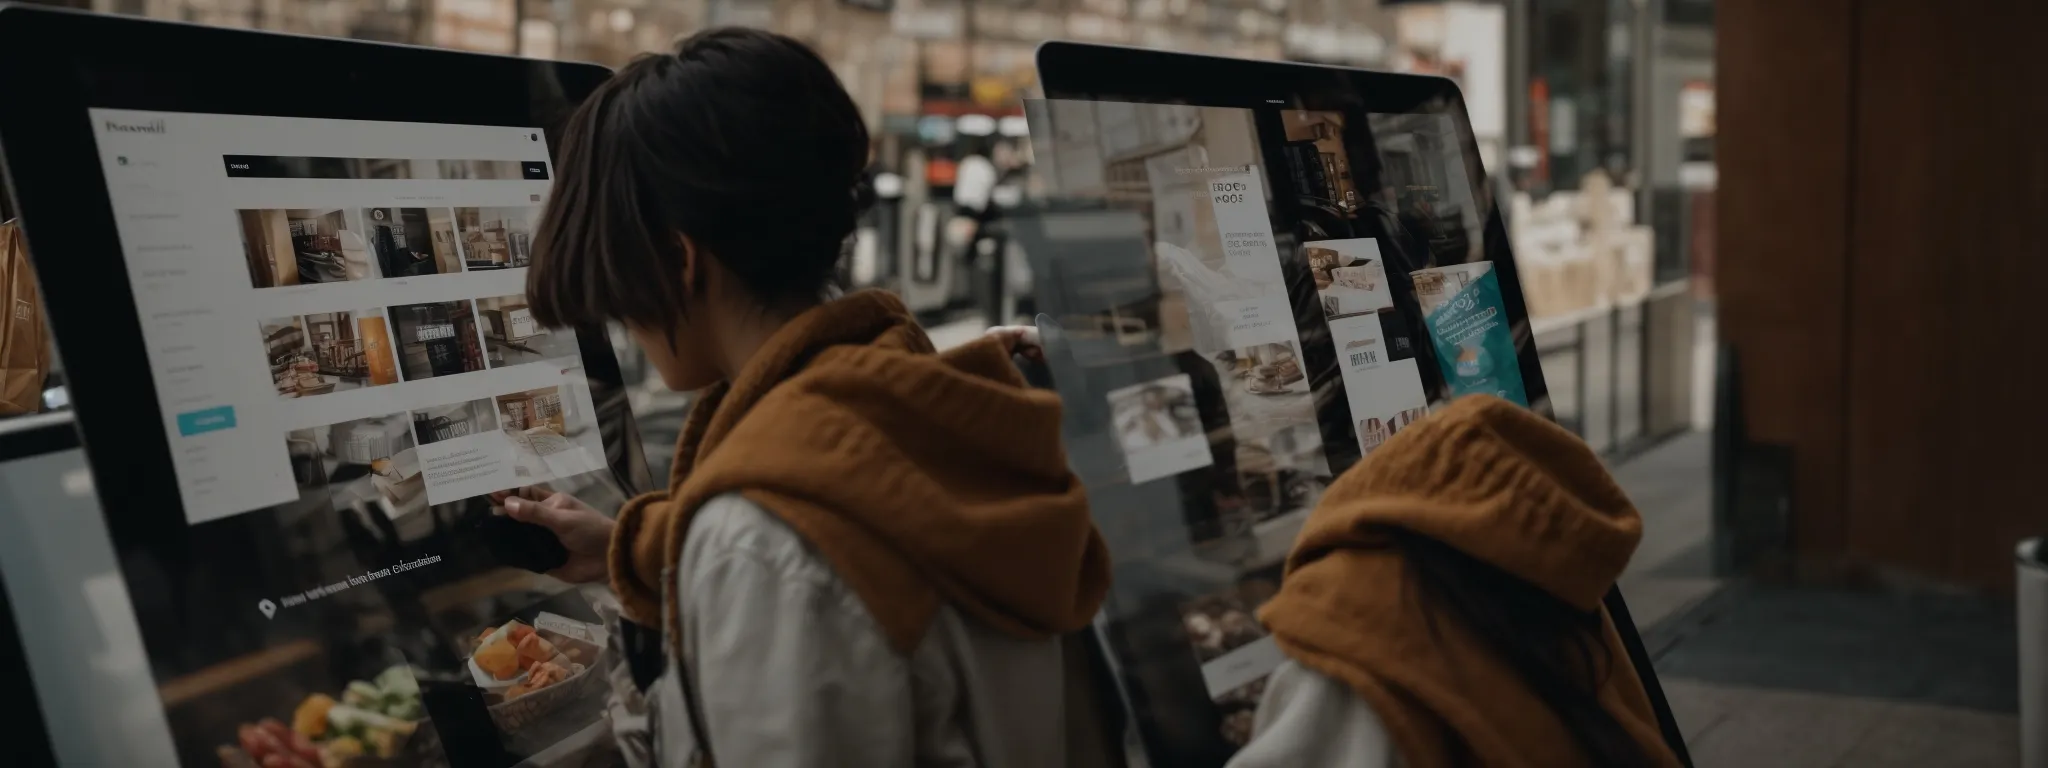 a shopper effortlessly navigating a sleek, digital storefront on a tablet.